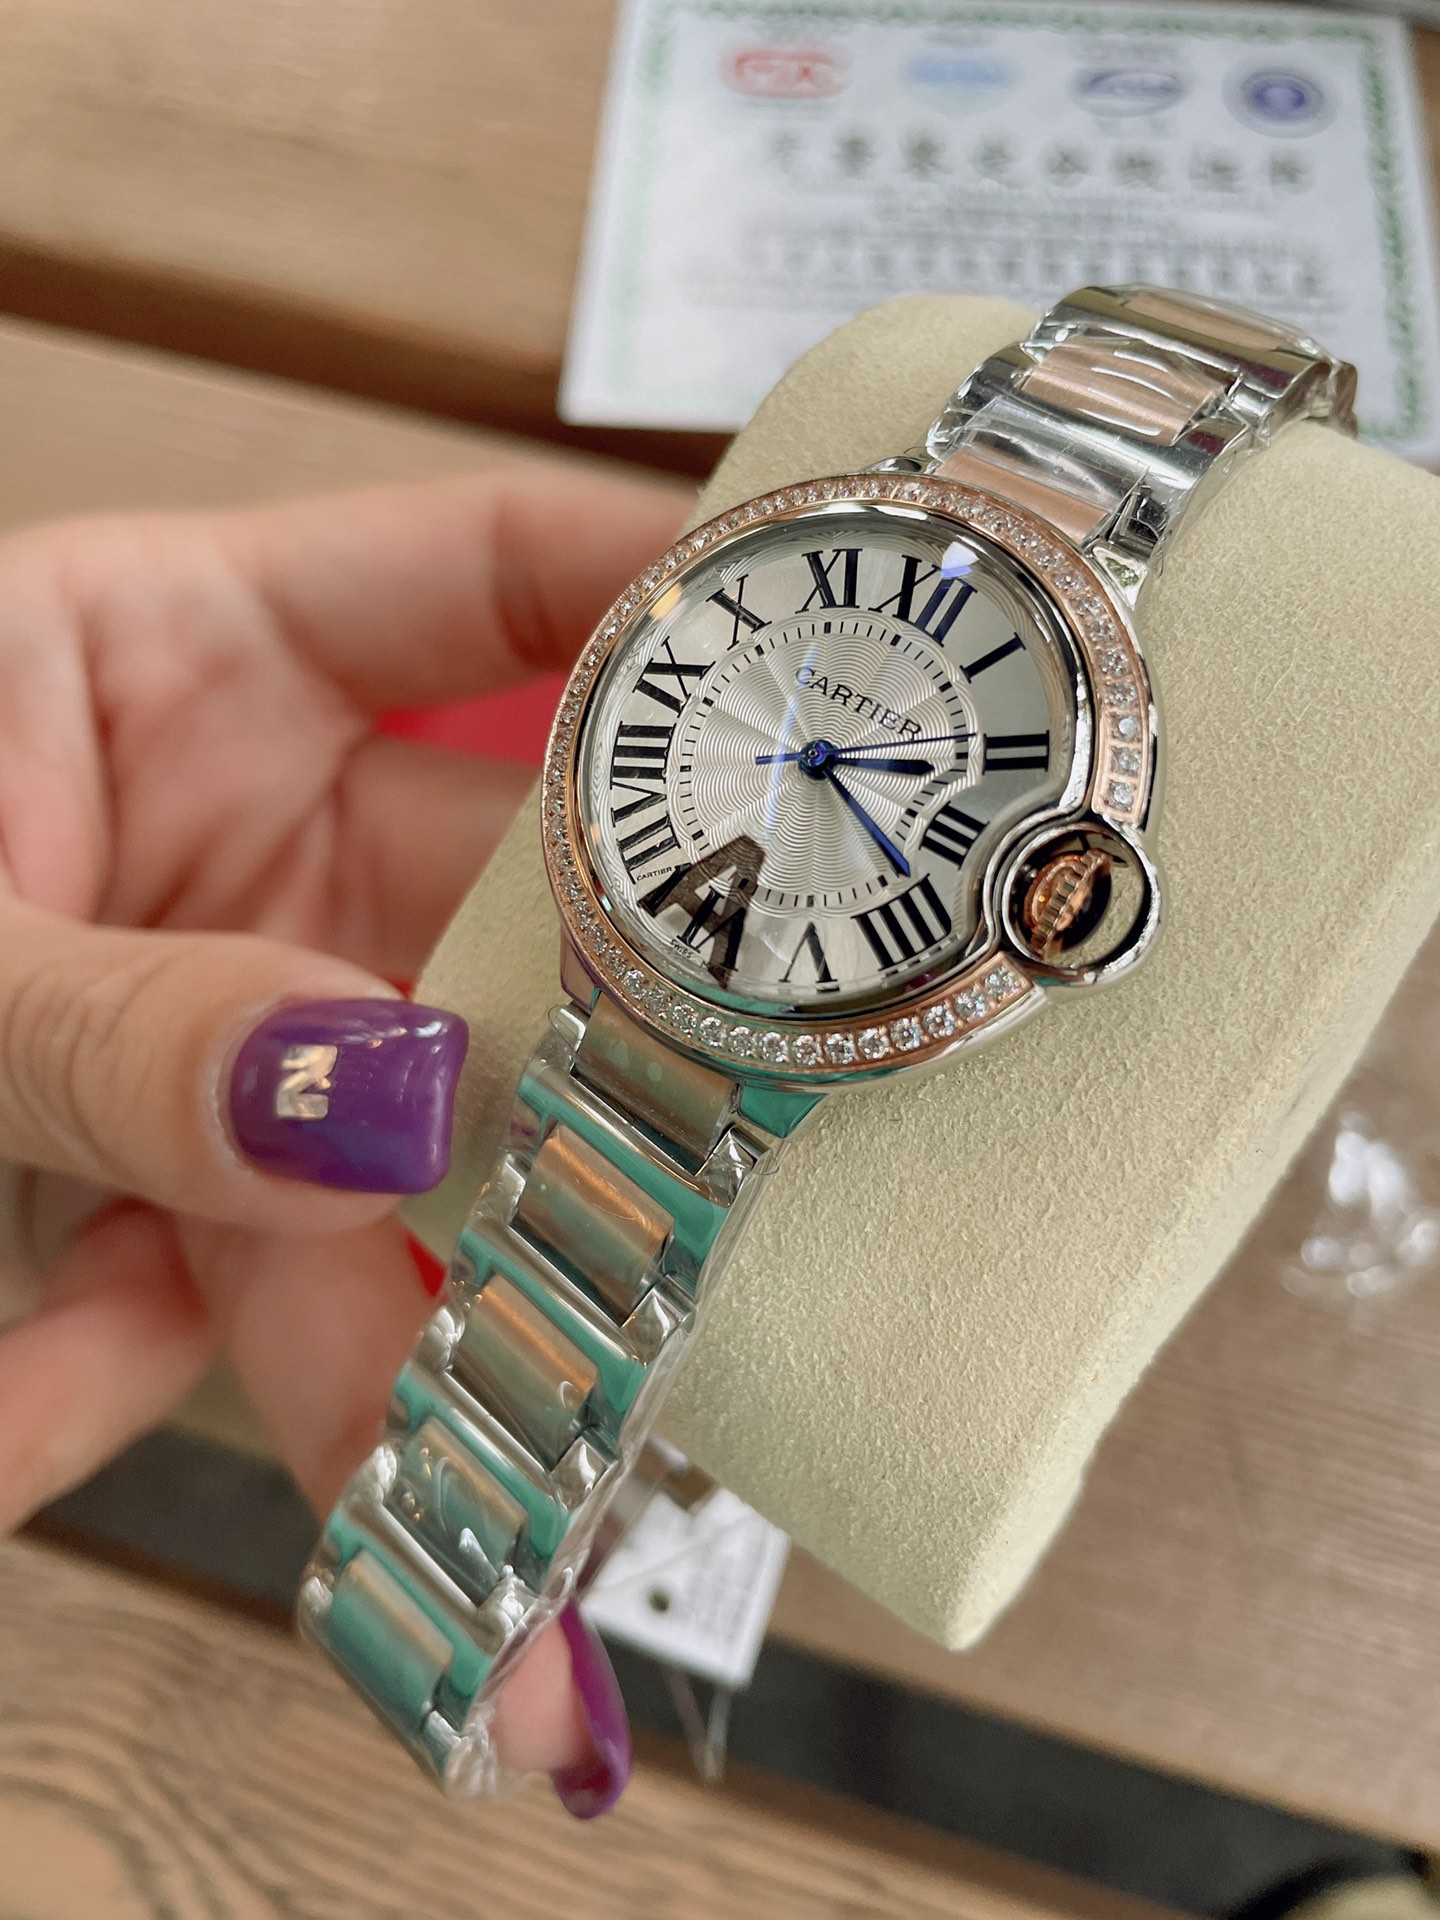 「ダイヤモンドある」CARTIERカルティエ 時計 中身コピー フランス 薄い腕時計 軽量 レディース 最新商品 キラキラ _5